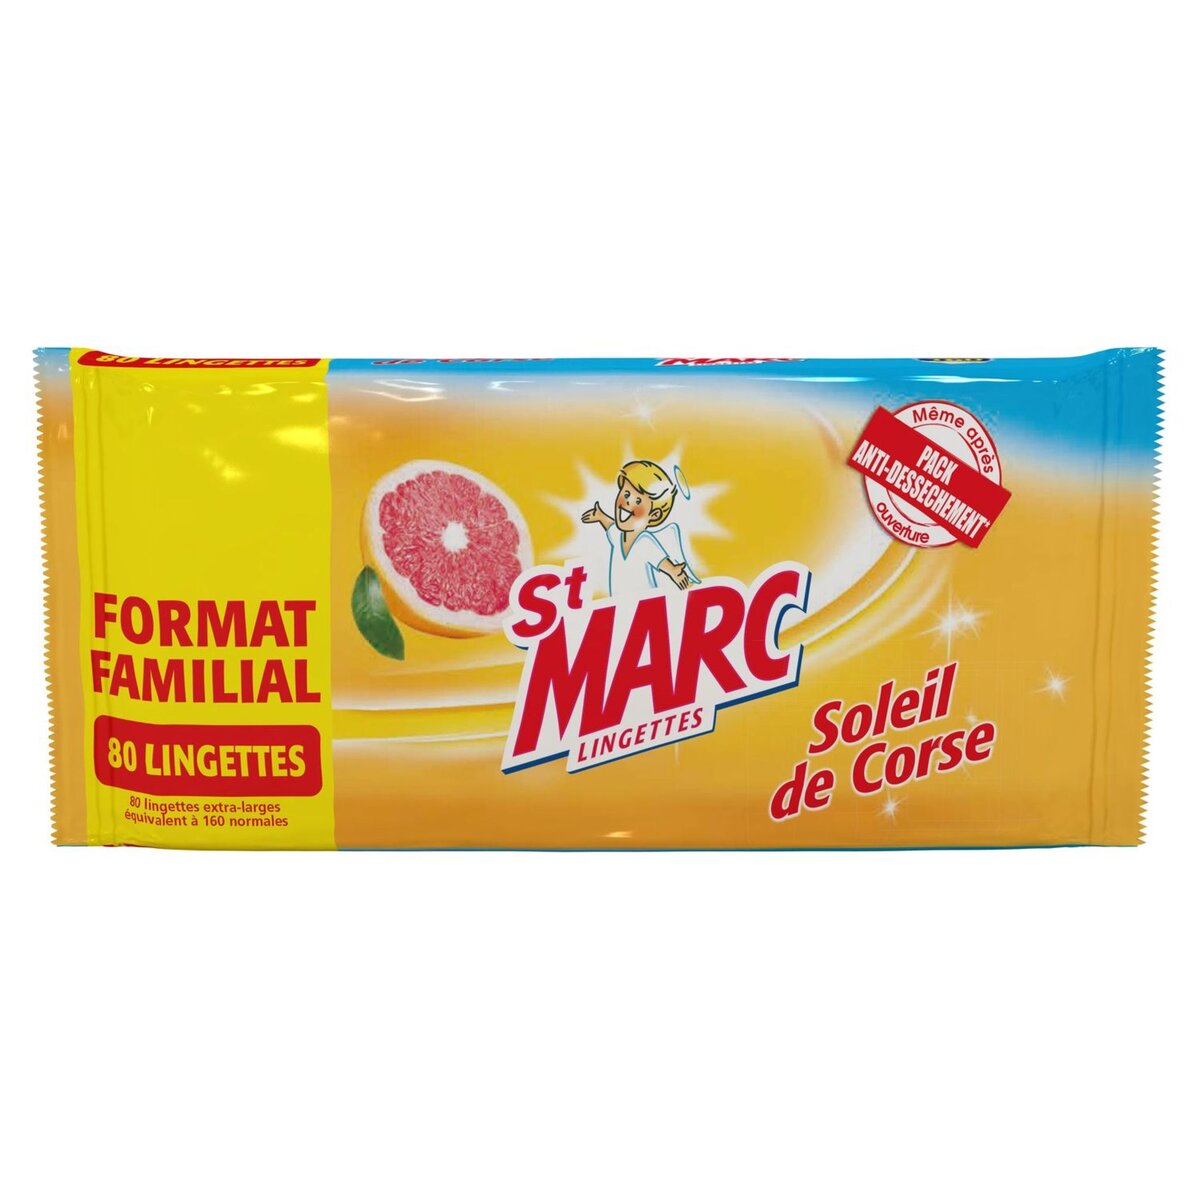 ST MARC St Marc lingettes soleil de Corse x80 format familial